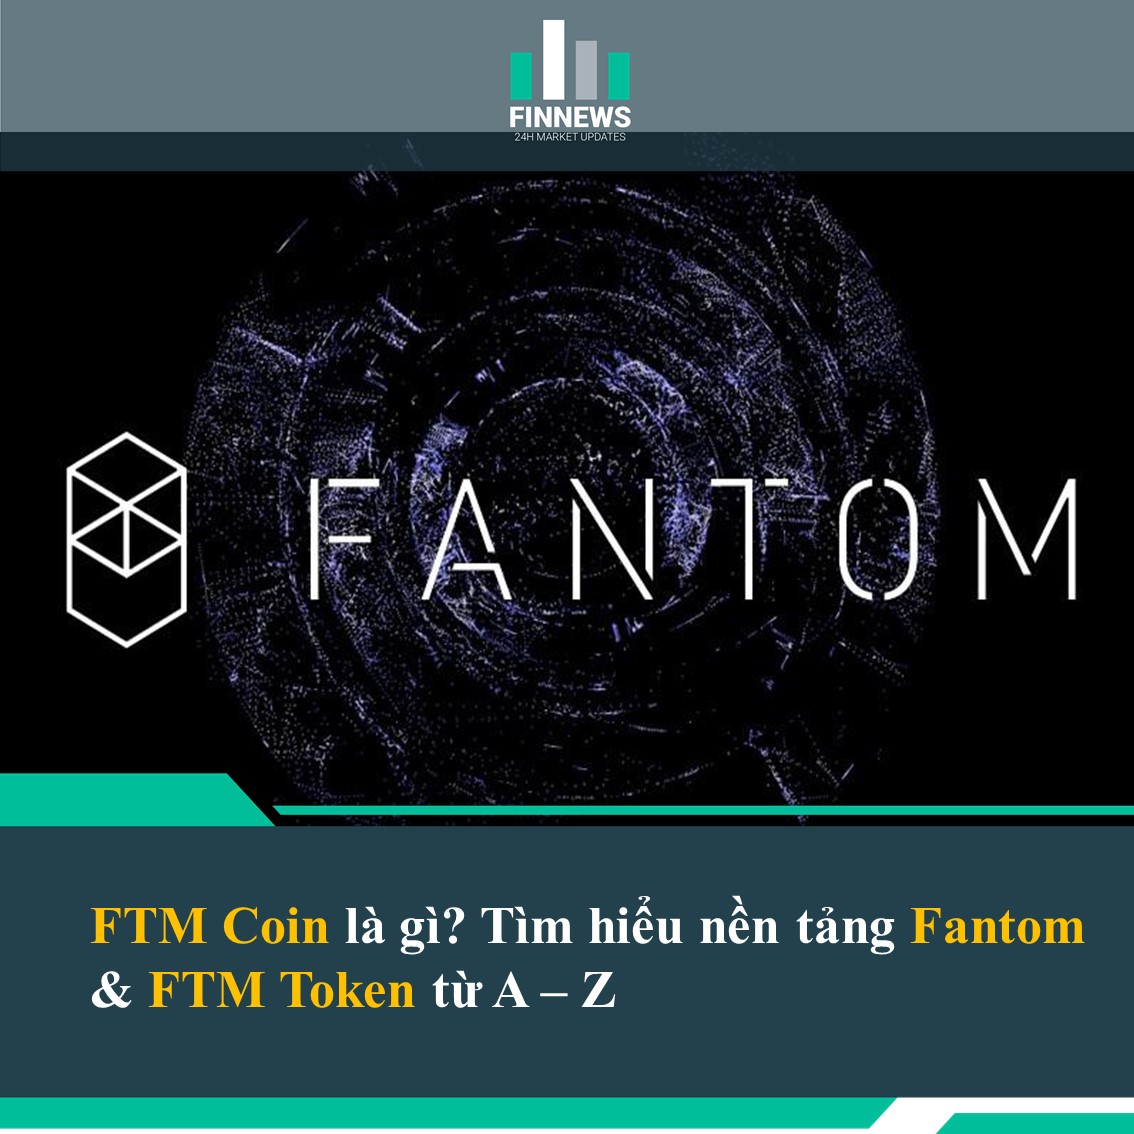 Fantom là gì? Tìm hiểu về FTM Token từ A đến Z